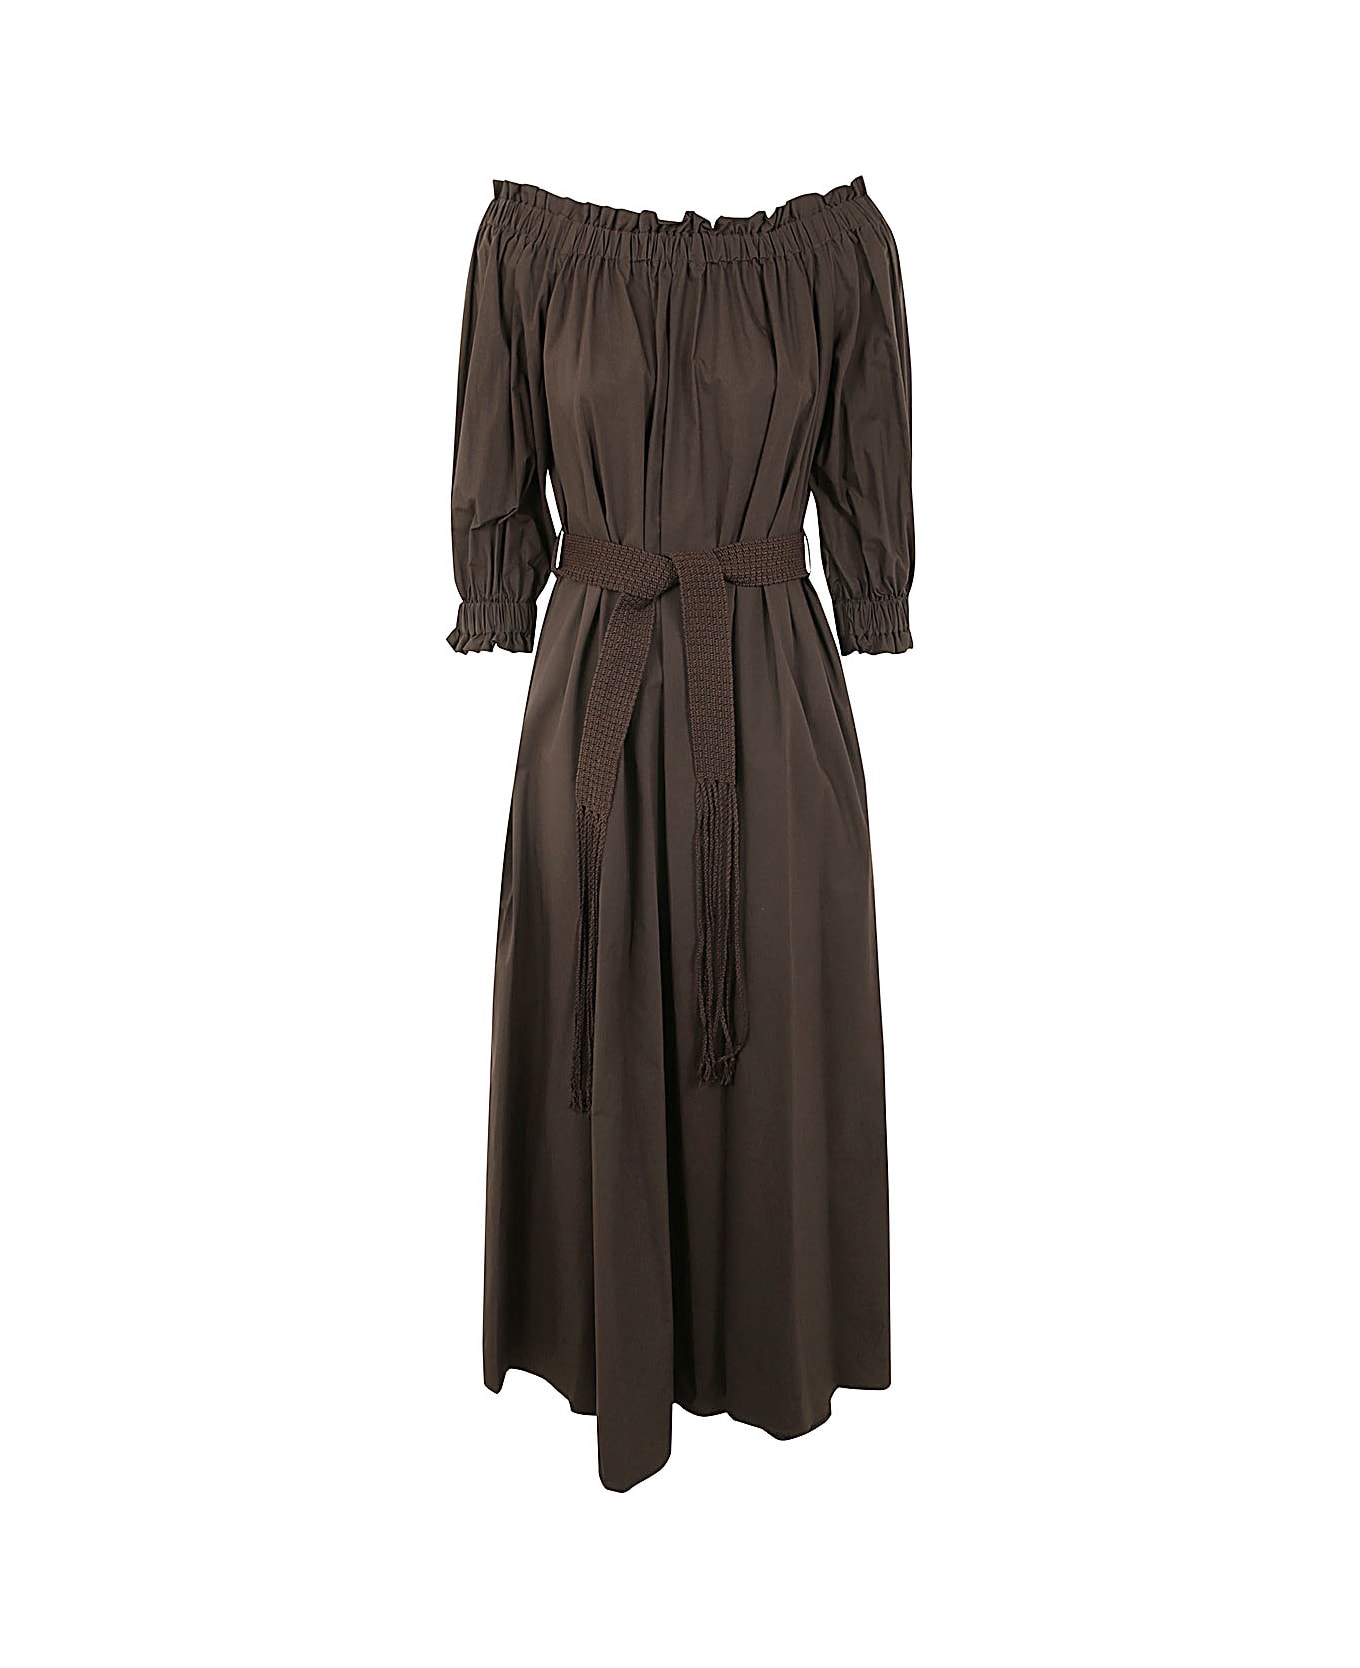 Parosh Off The Shoulder Long Dress - Dark Brown